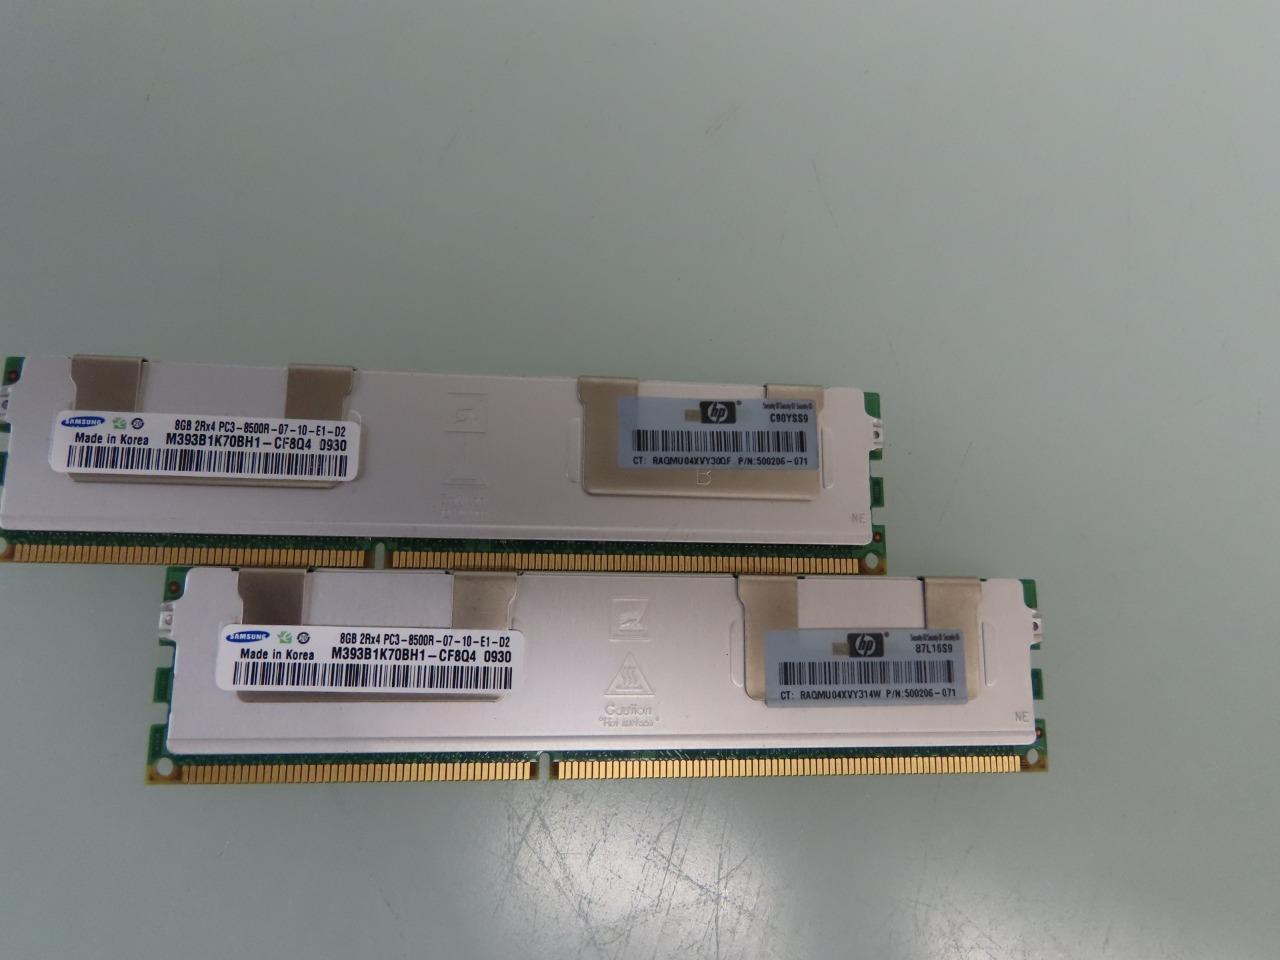 M393B1K70BH1-CF8Q4 Samsung Server 8GB PC3-8500 DDR3-1066MHz Dual Rank Memory